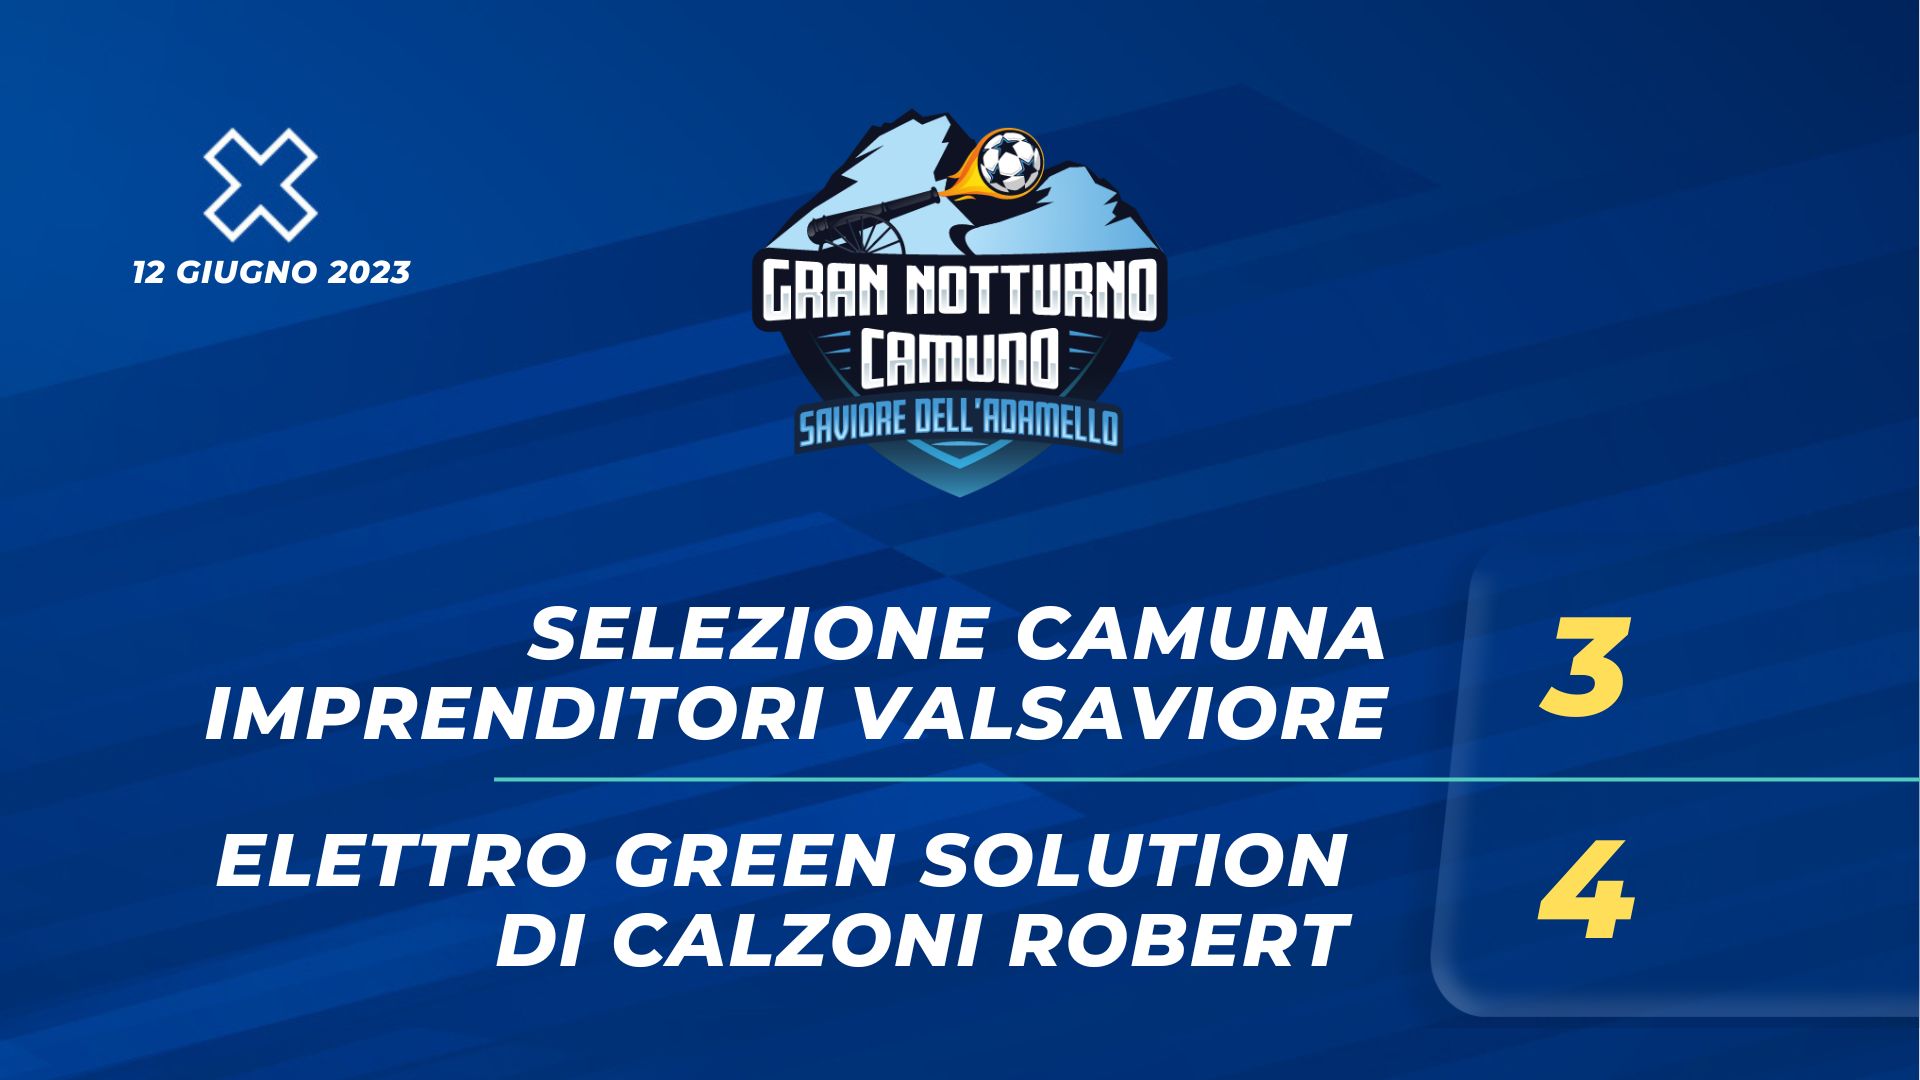 Sel.camuna Imprenditori Valsaviore  - Elettro Green Solution 3 - 4 